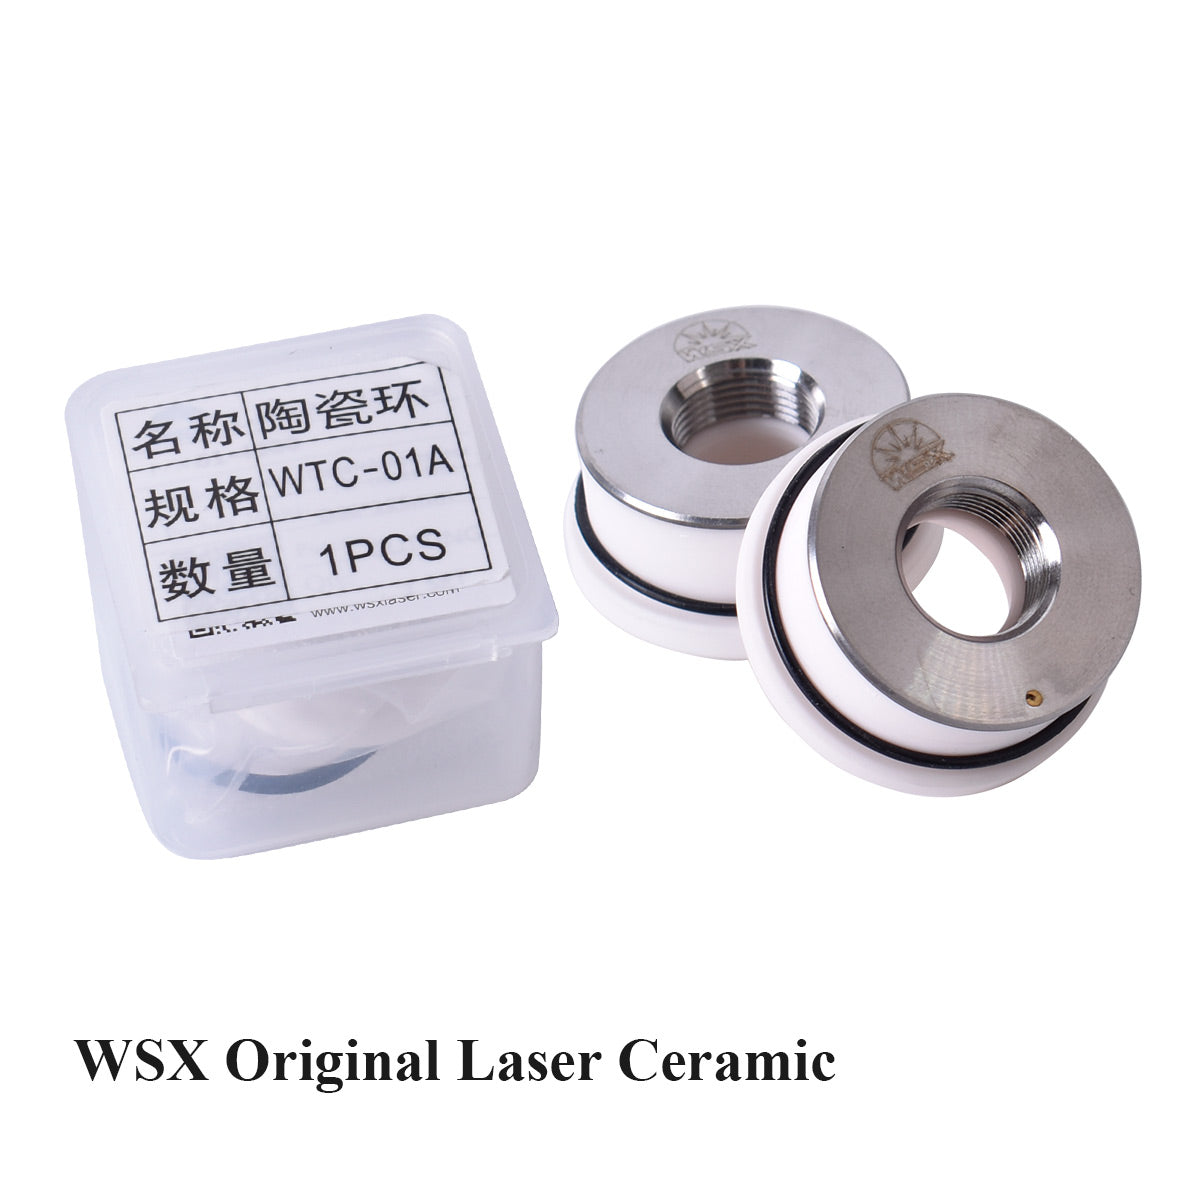 Оригинальные лазерные керамические кольцевые насадки Startnow, детали держателя для режущей головки волокна WSX